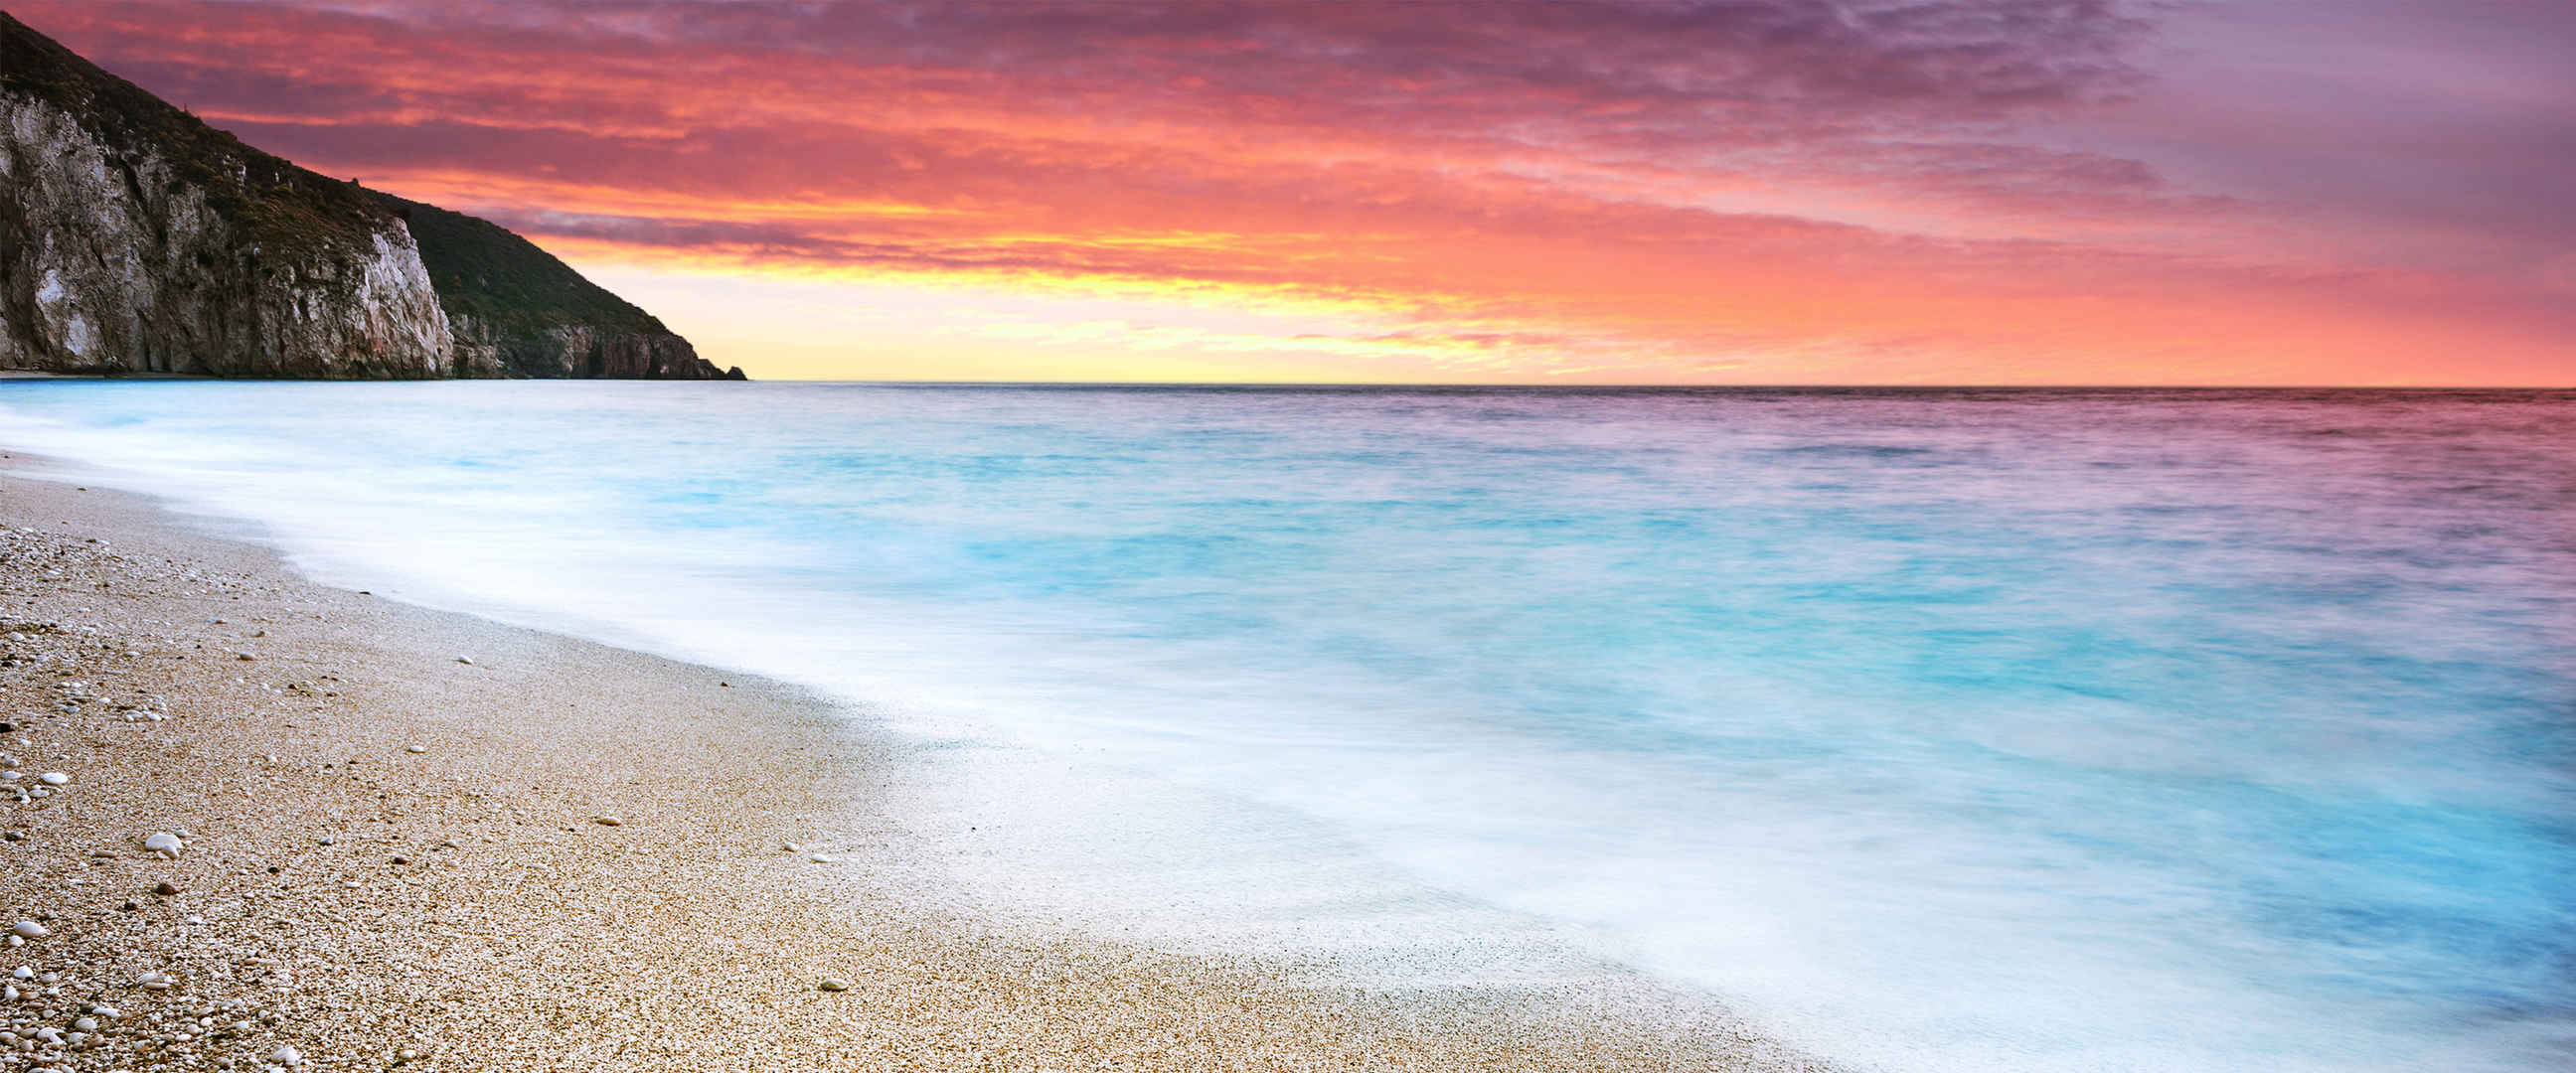 红霞 蓝色海水 沙滩 图片-